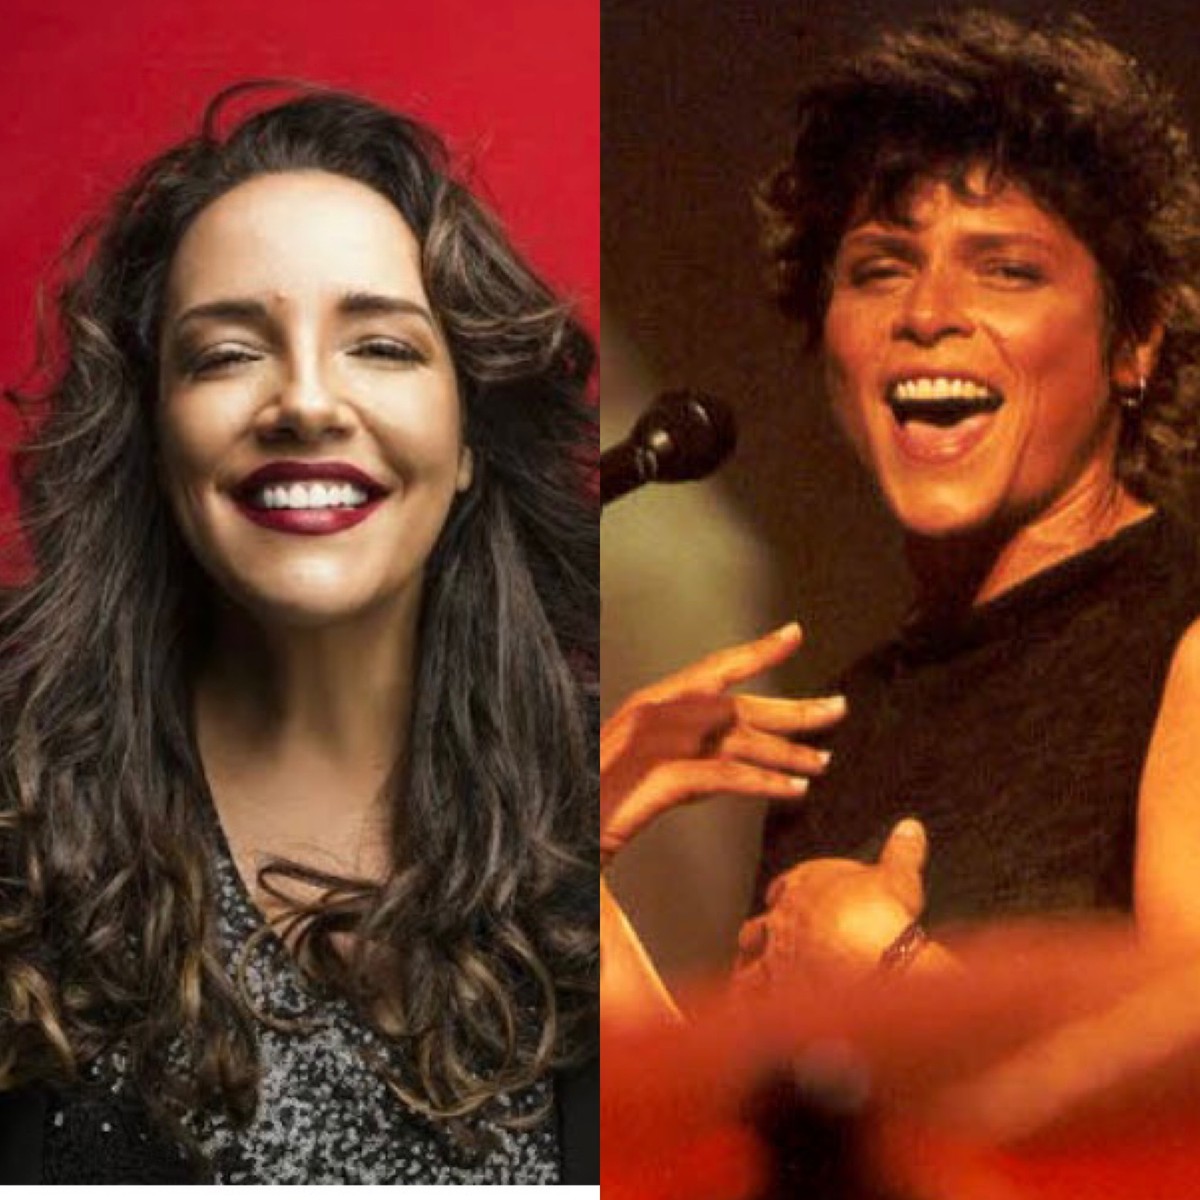 Justiça pode impedir show de Ana Carolina cantando Cássia Eller por uso de  fotos sem autorização | Cultura | O Globo